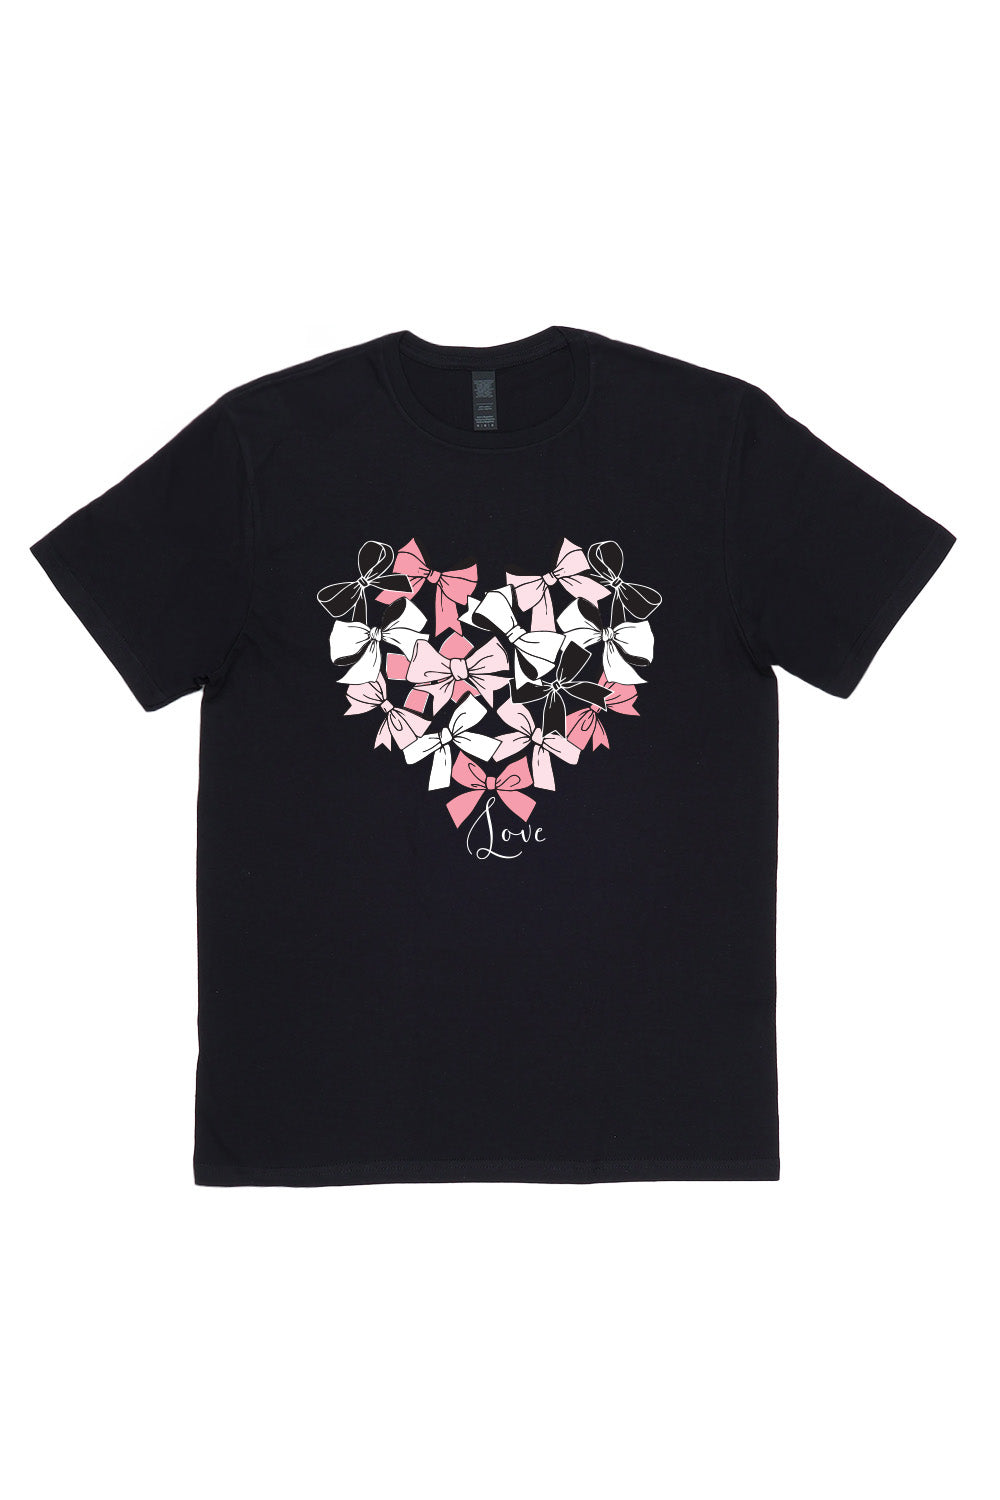 Heart of Bow's T-Shirt in Black (Custom Packs)